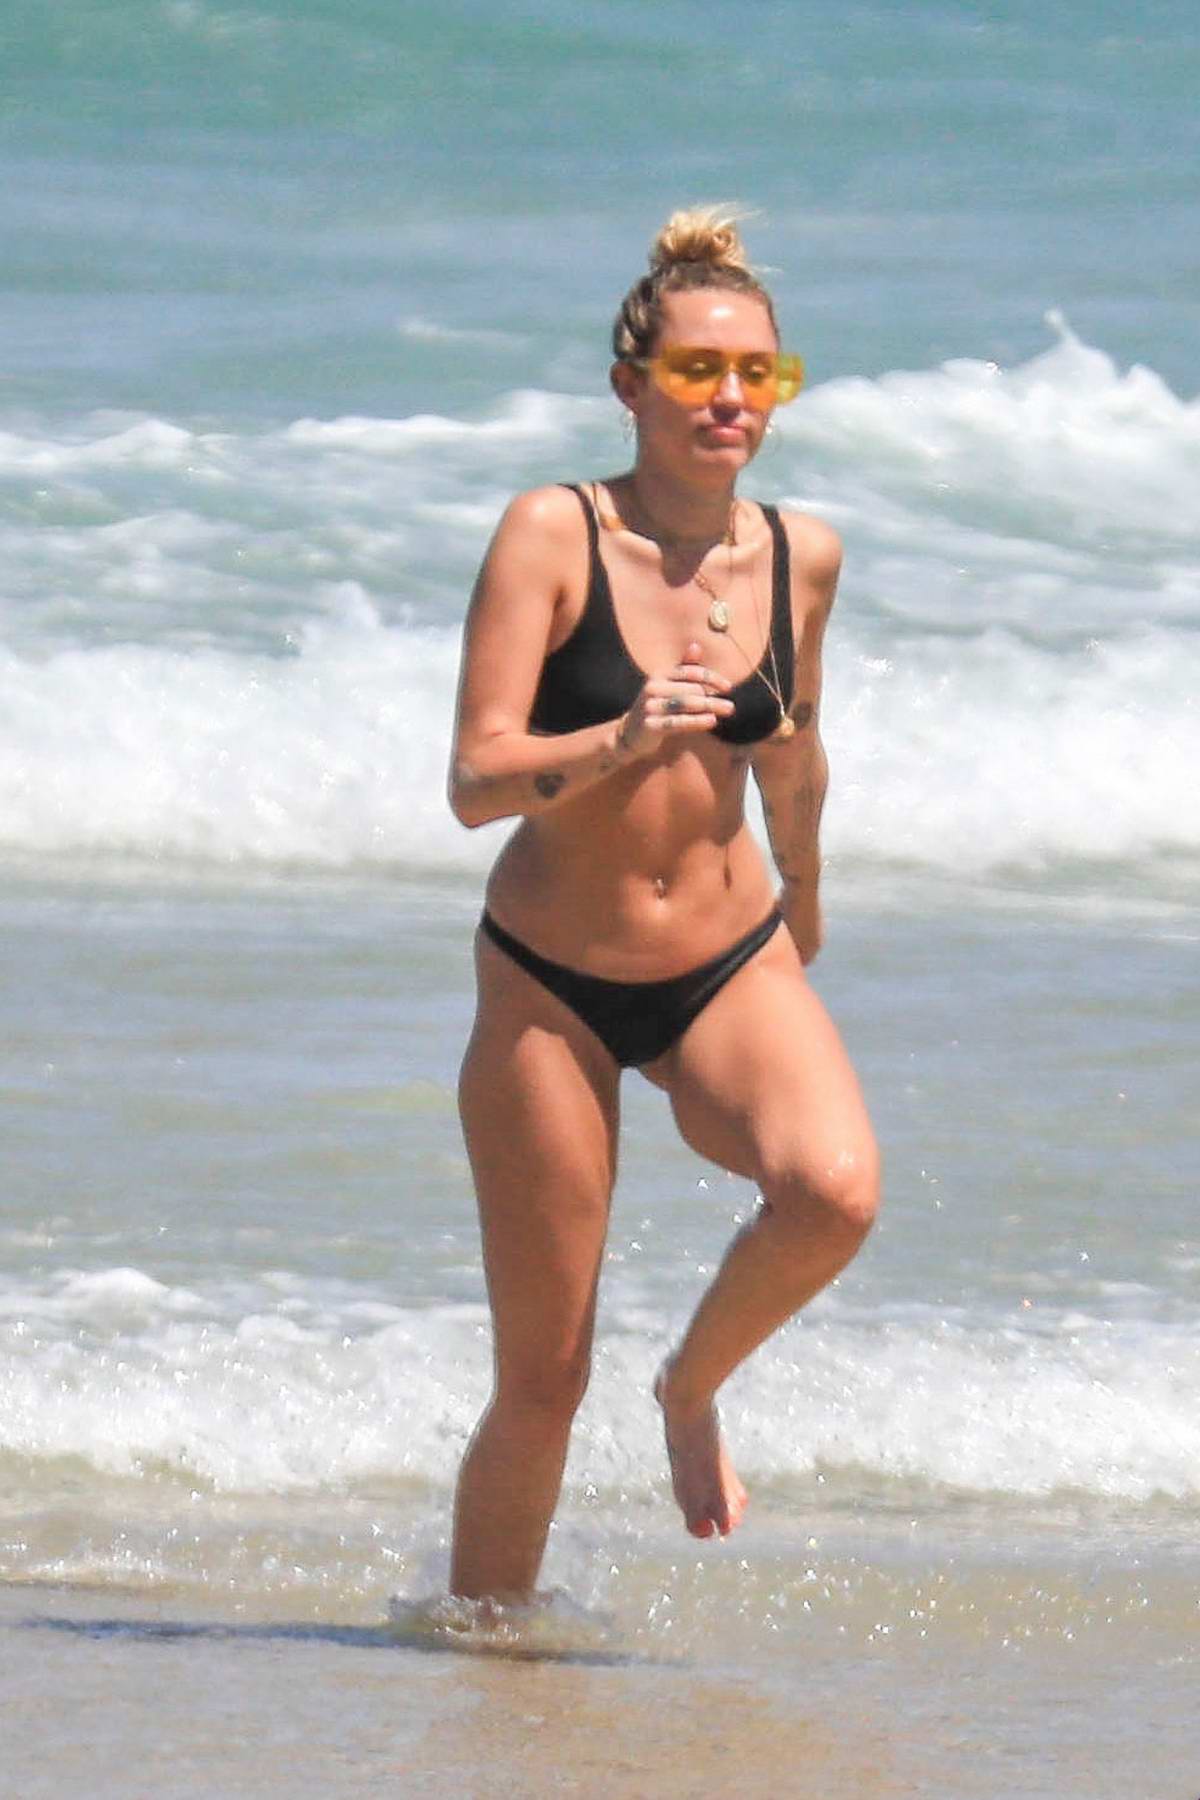 miley cyrus enjoying the beach in a black bikini in byron bay